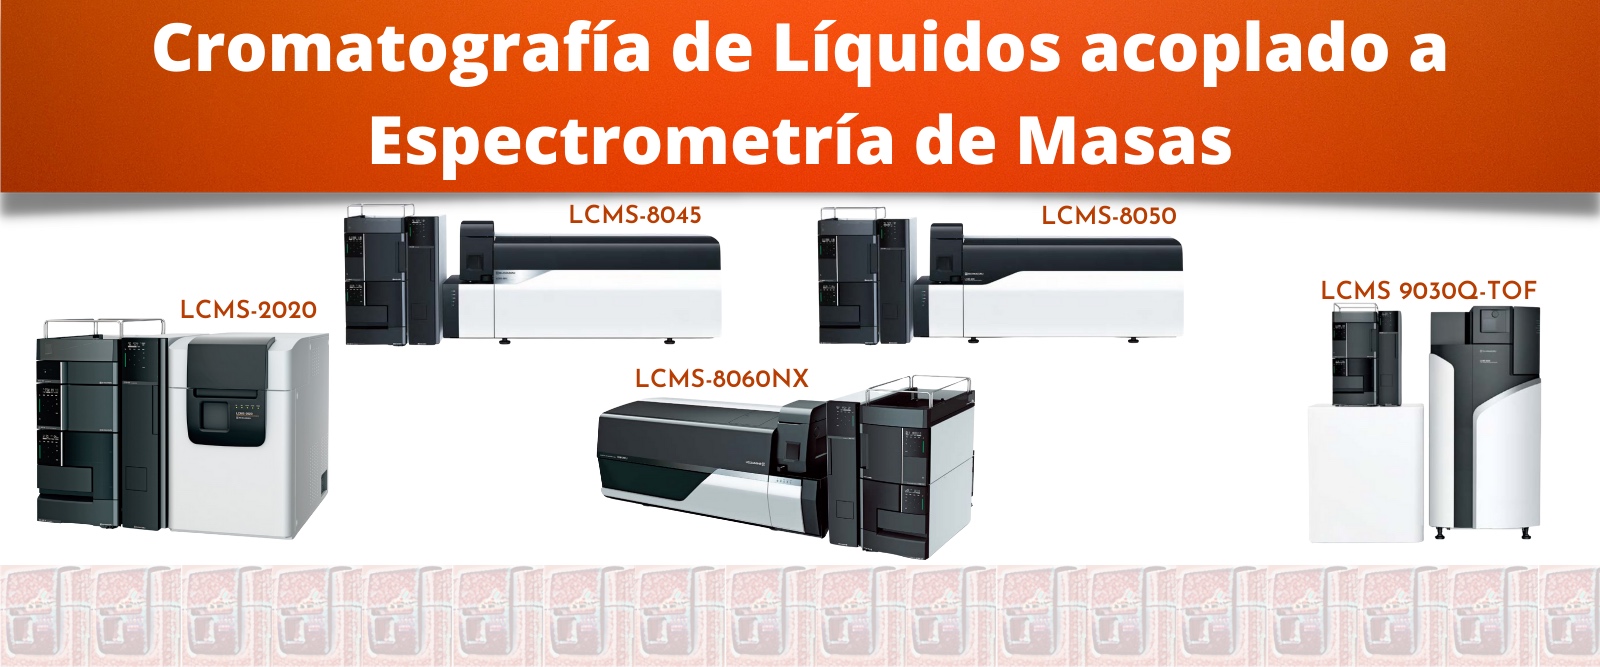 Cromatografia de Liquidos Espectrometría de Masas